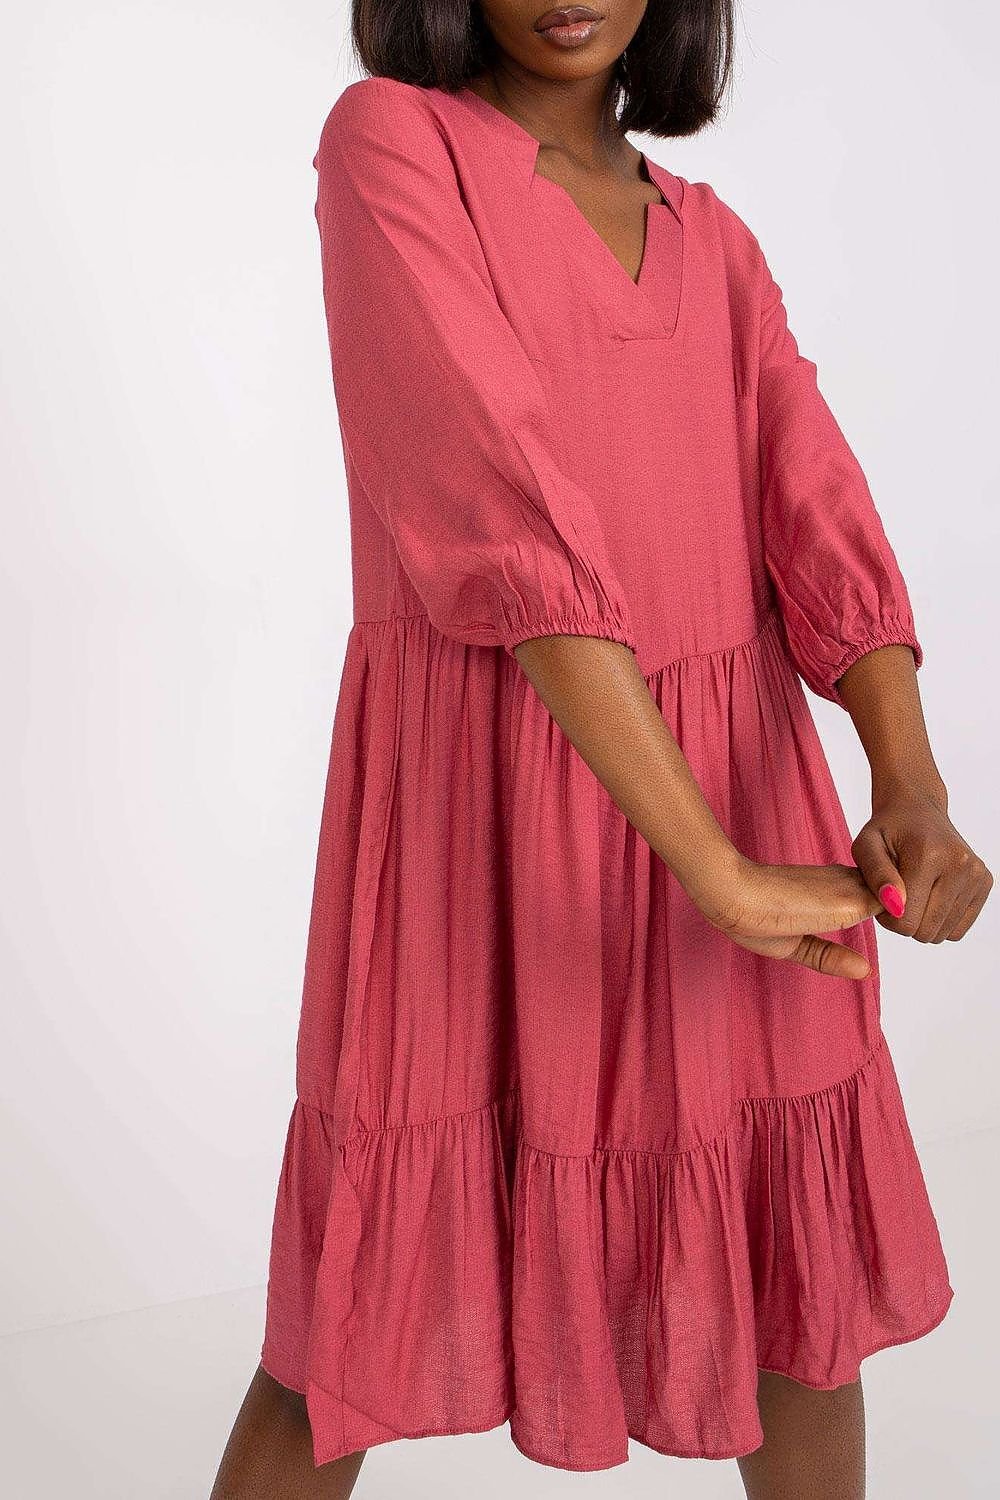 TEEK - Pink Tri-Notch Daydress DRESS TEEK M   